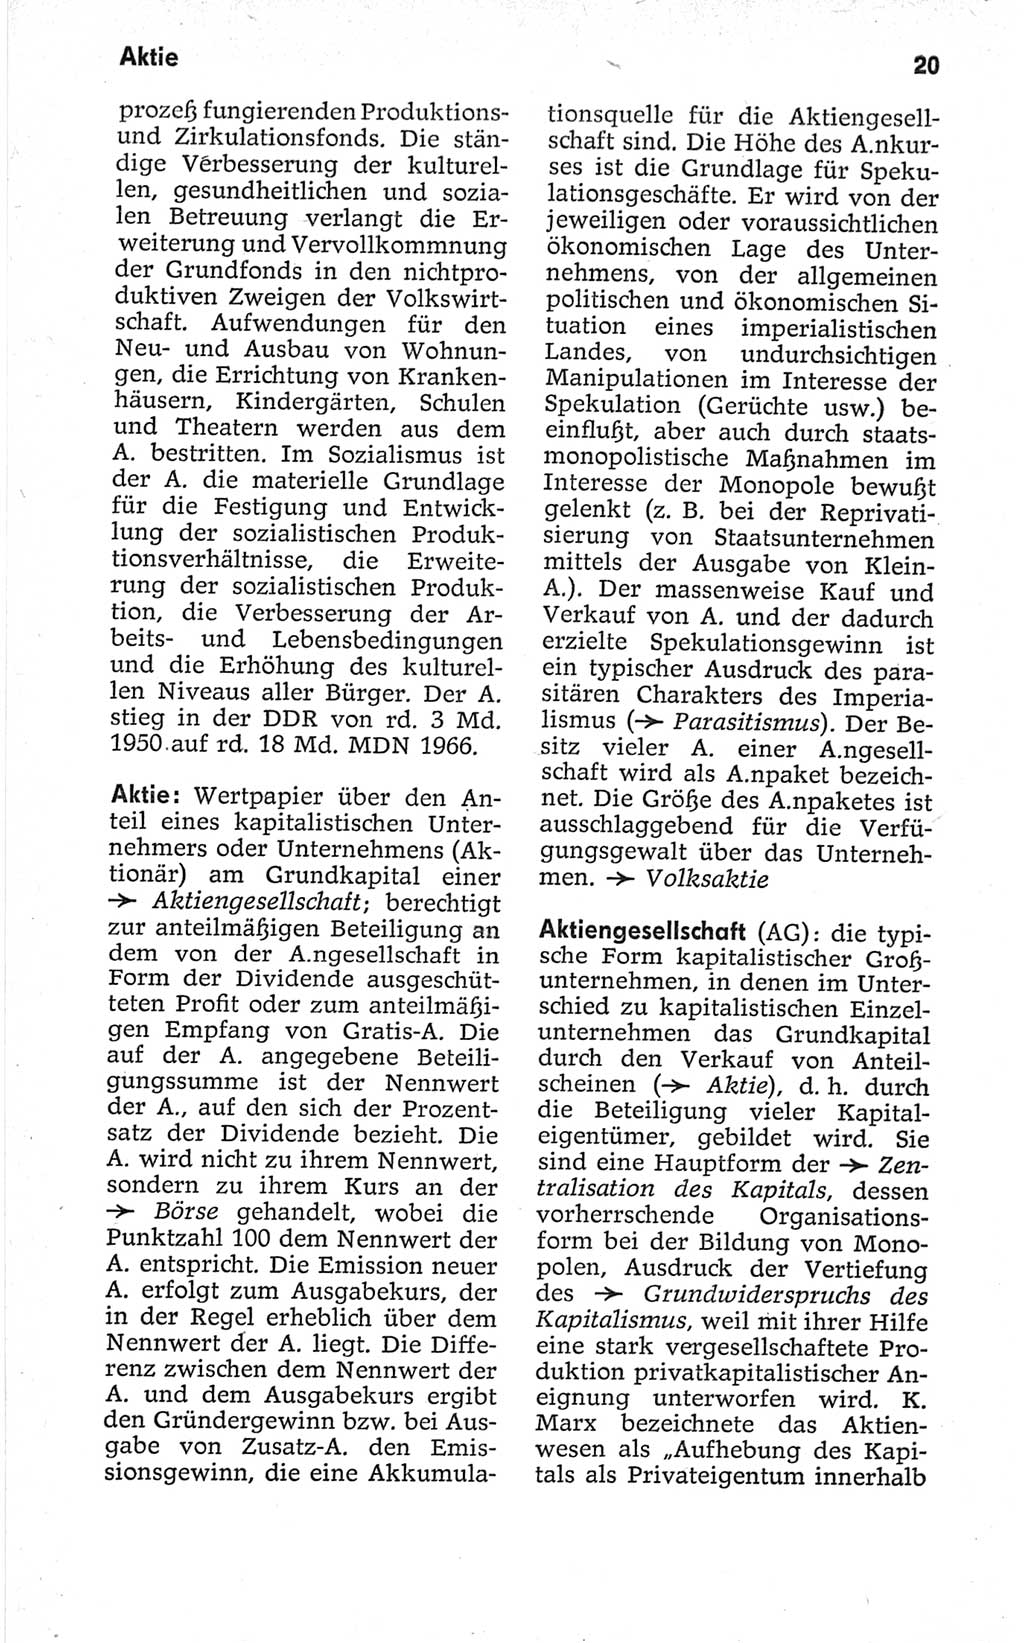 Kleines politisches Wörterbuch [Deutsche Demokratische Republik (DDR)] 1967, Seite 20 (Kl. pol. Wb. DDR 1967, S. 20)